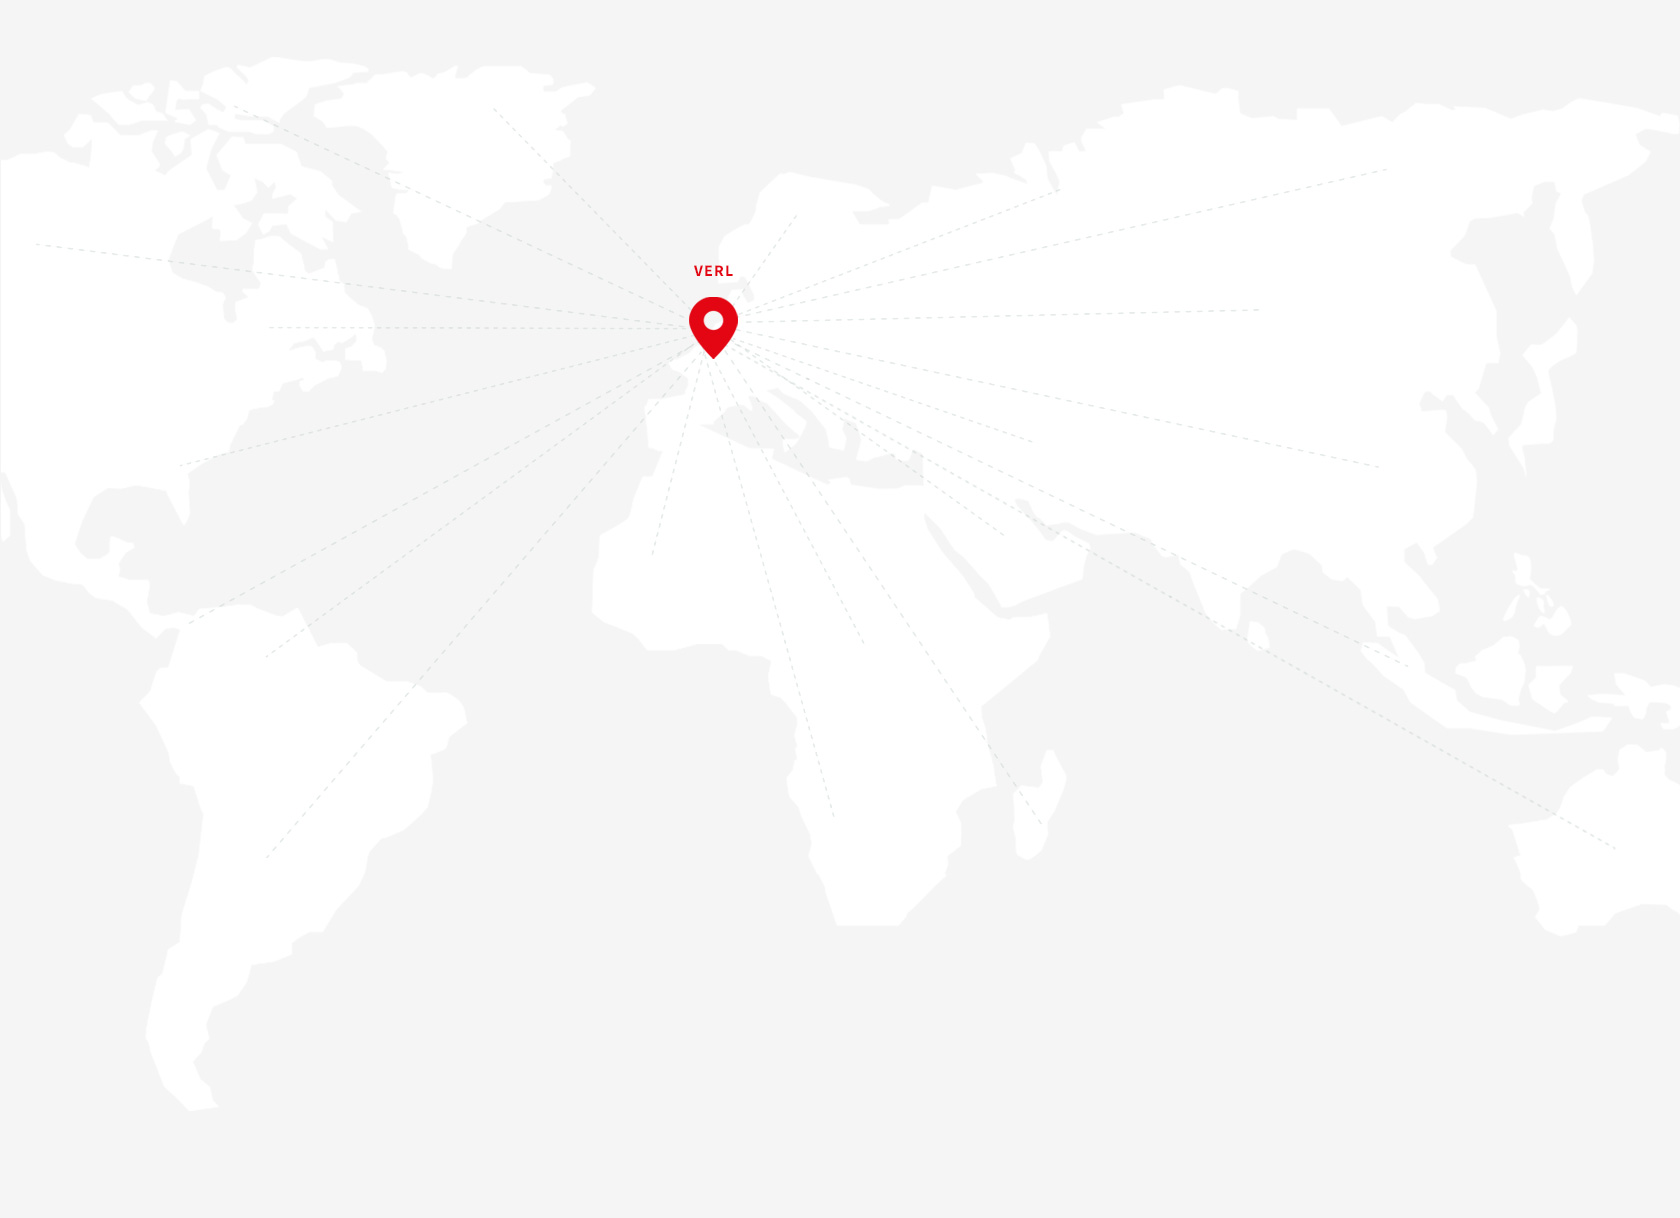 Fábrica de nobilia en Verl en el mapa del mundo